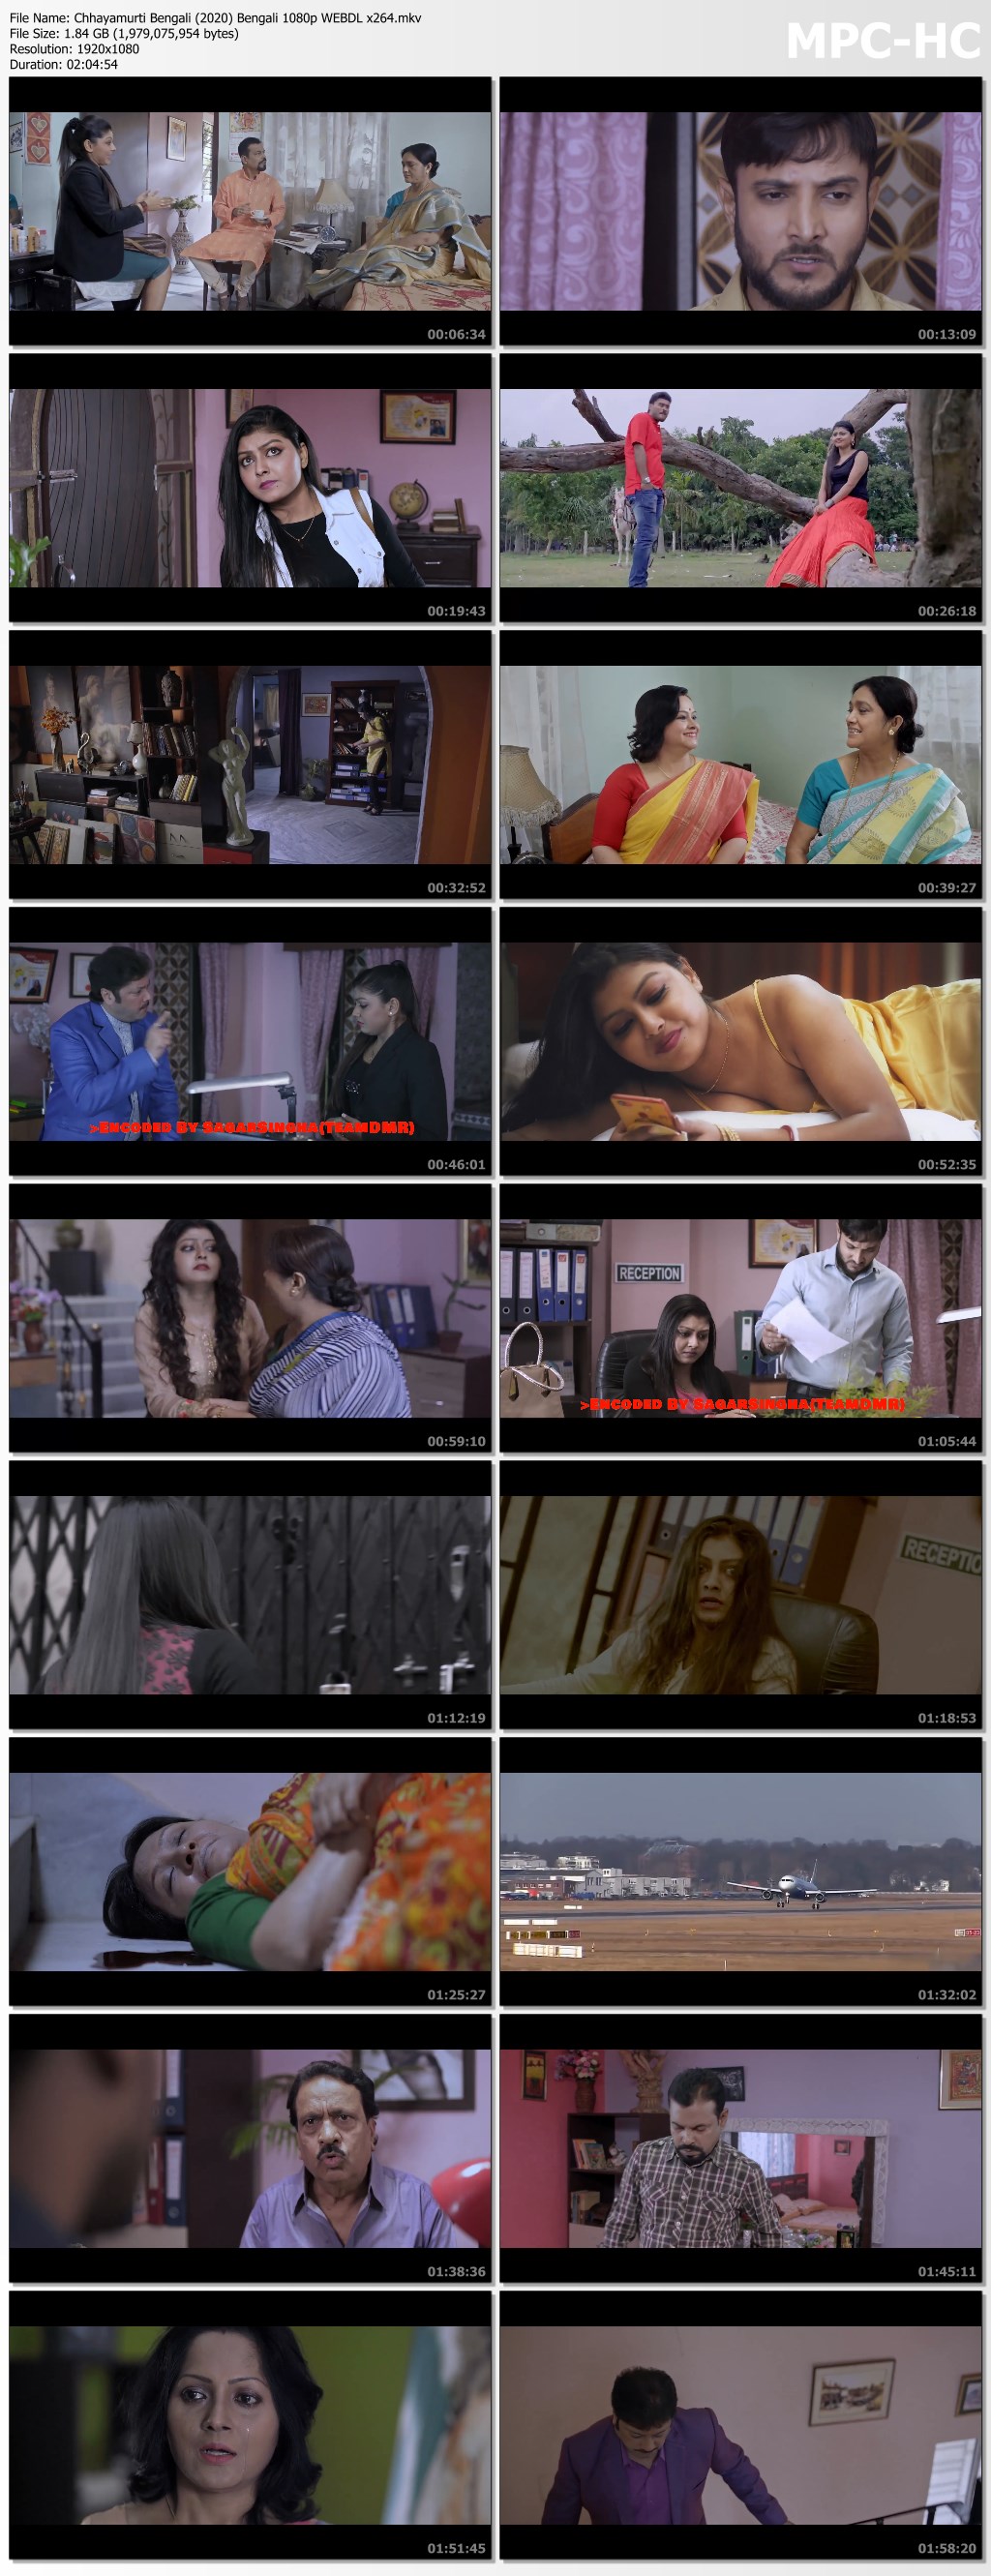 Chhayamurti Bengali (2020) Bengali 1080p WEBDL x264.mkv thumbs